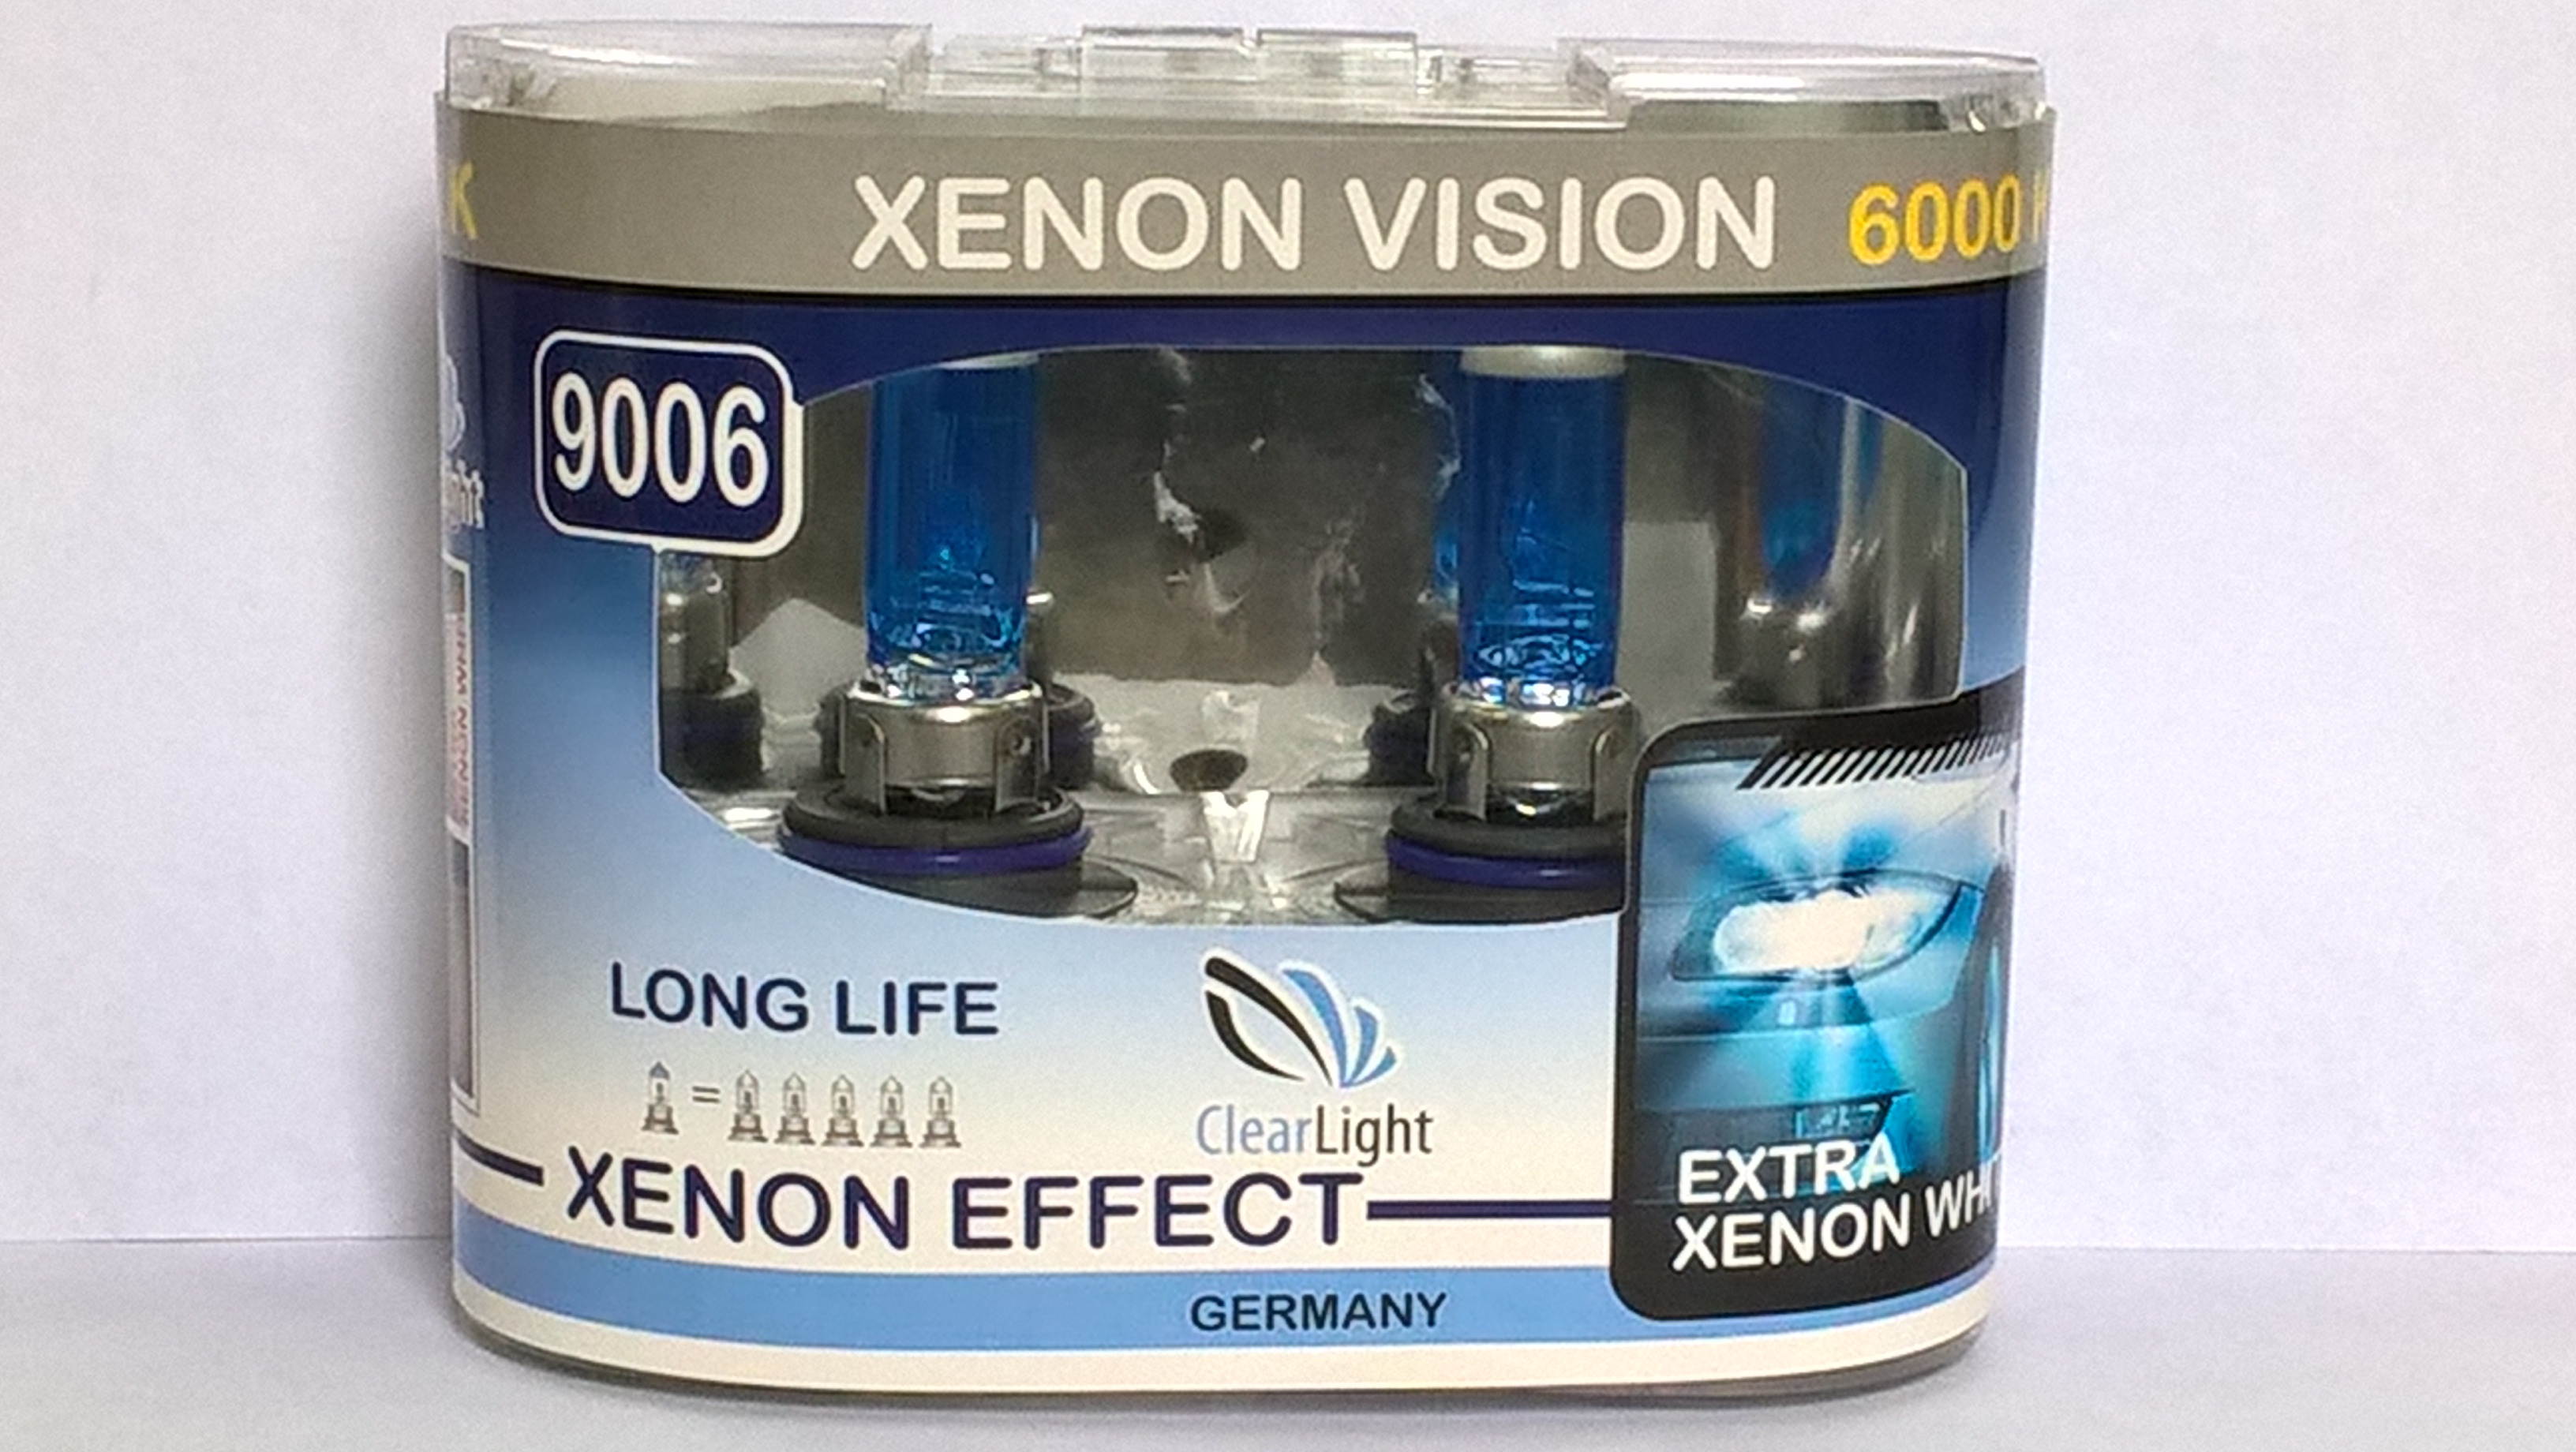 Xenon vision. Clearlight h7 Xenon Vision 6000k. H3 Clearlight Xenon Vision 6000k. Xenon Vision 6000. Лампа автомобильная Clearlight h9 12v 65w XENONVISION 6000k.